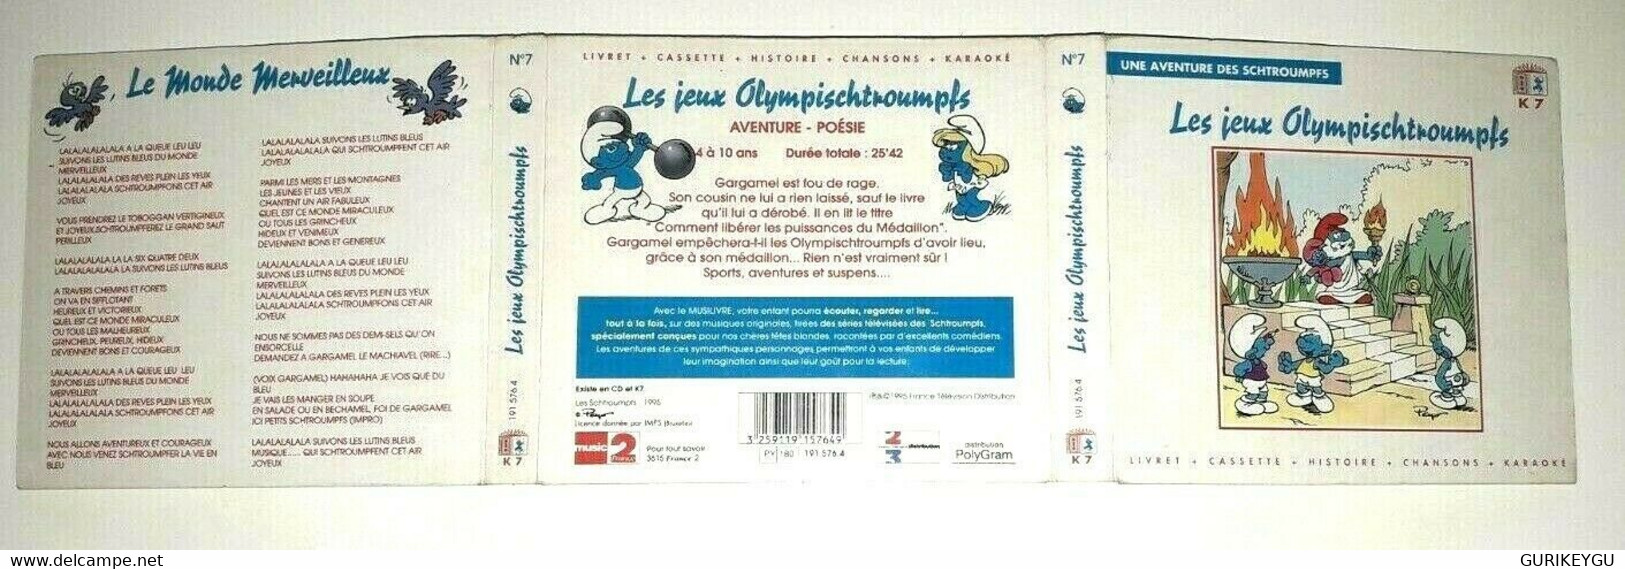 HYPER RARE  jeux schtroumpfs livret cassette audio olympischtroumpfs K7 chanson PEYO 1995 EO